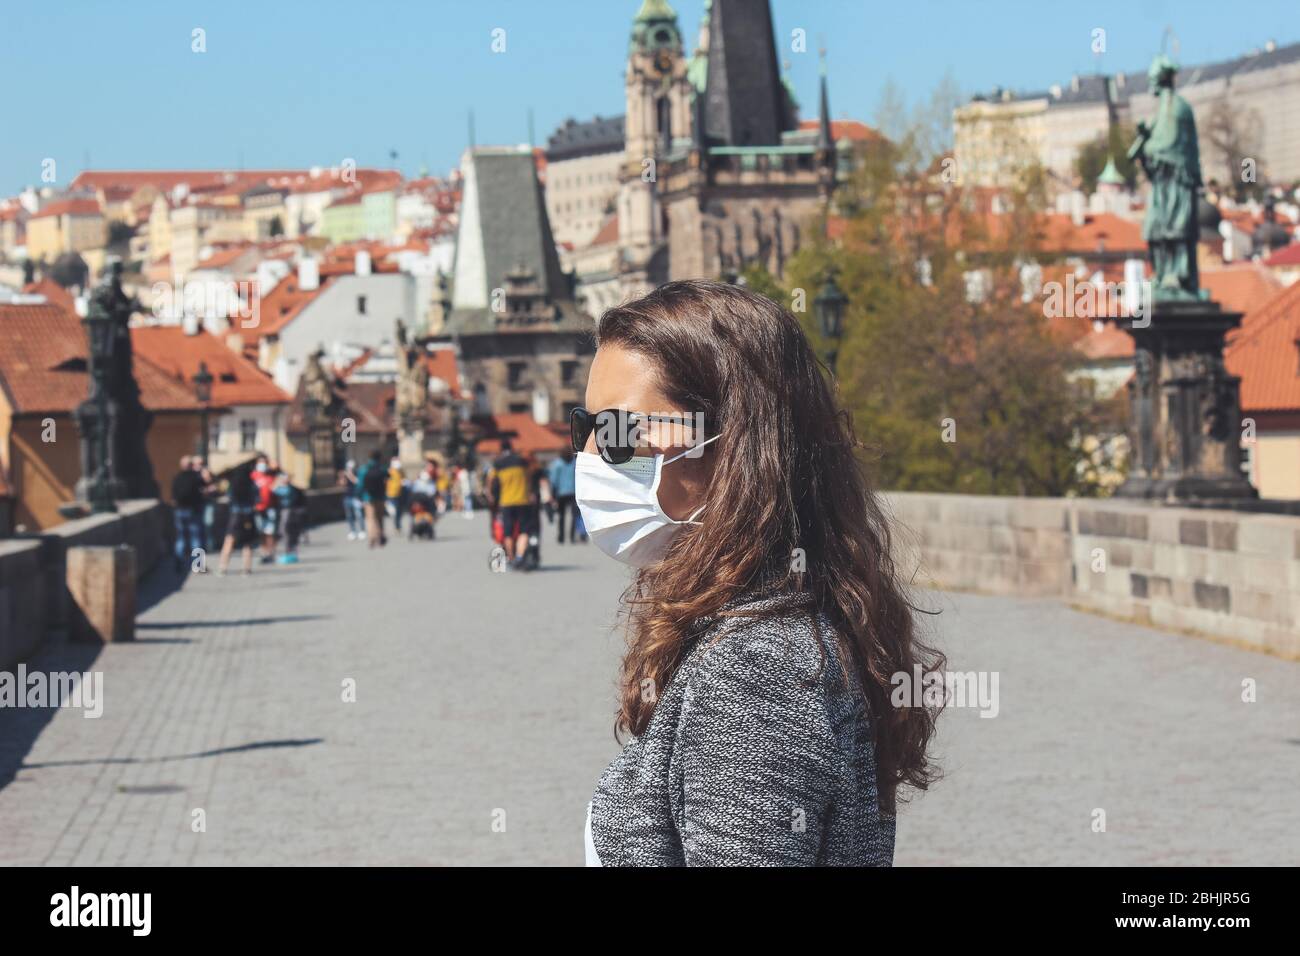 Jeune femme avec lunettes de soleil et masque médical photographié sur le pont Charles à Prague, République tchèque. Vieille ville floue à l'arrière-plan. Voyager, tourisme pendant coronavirus. COVID-19. Banque D'Images